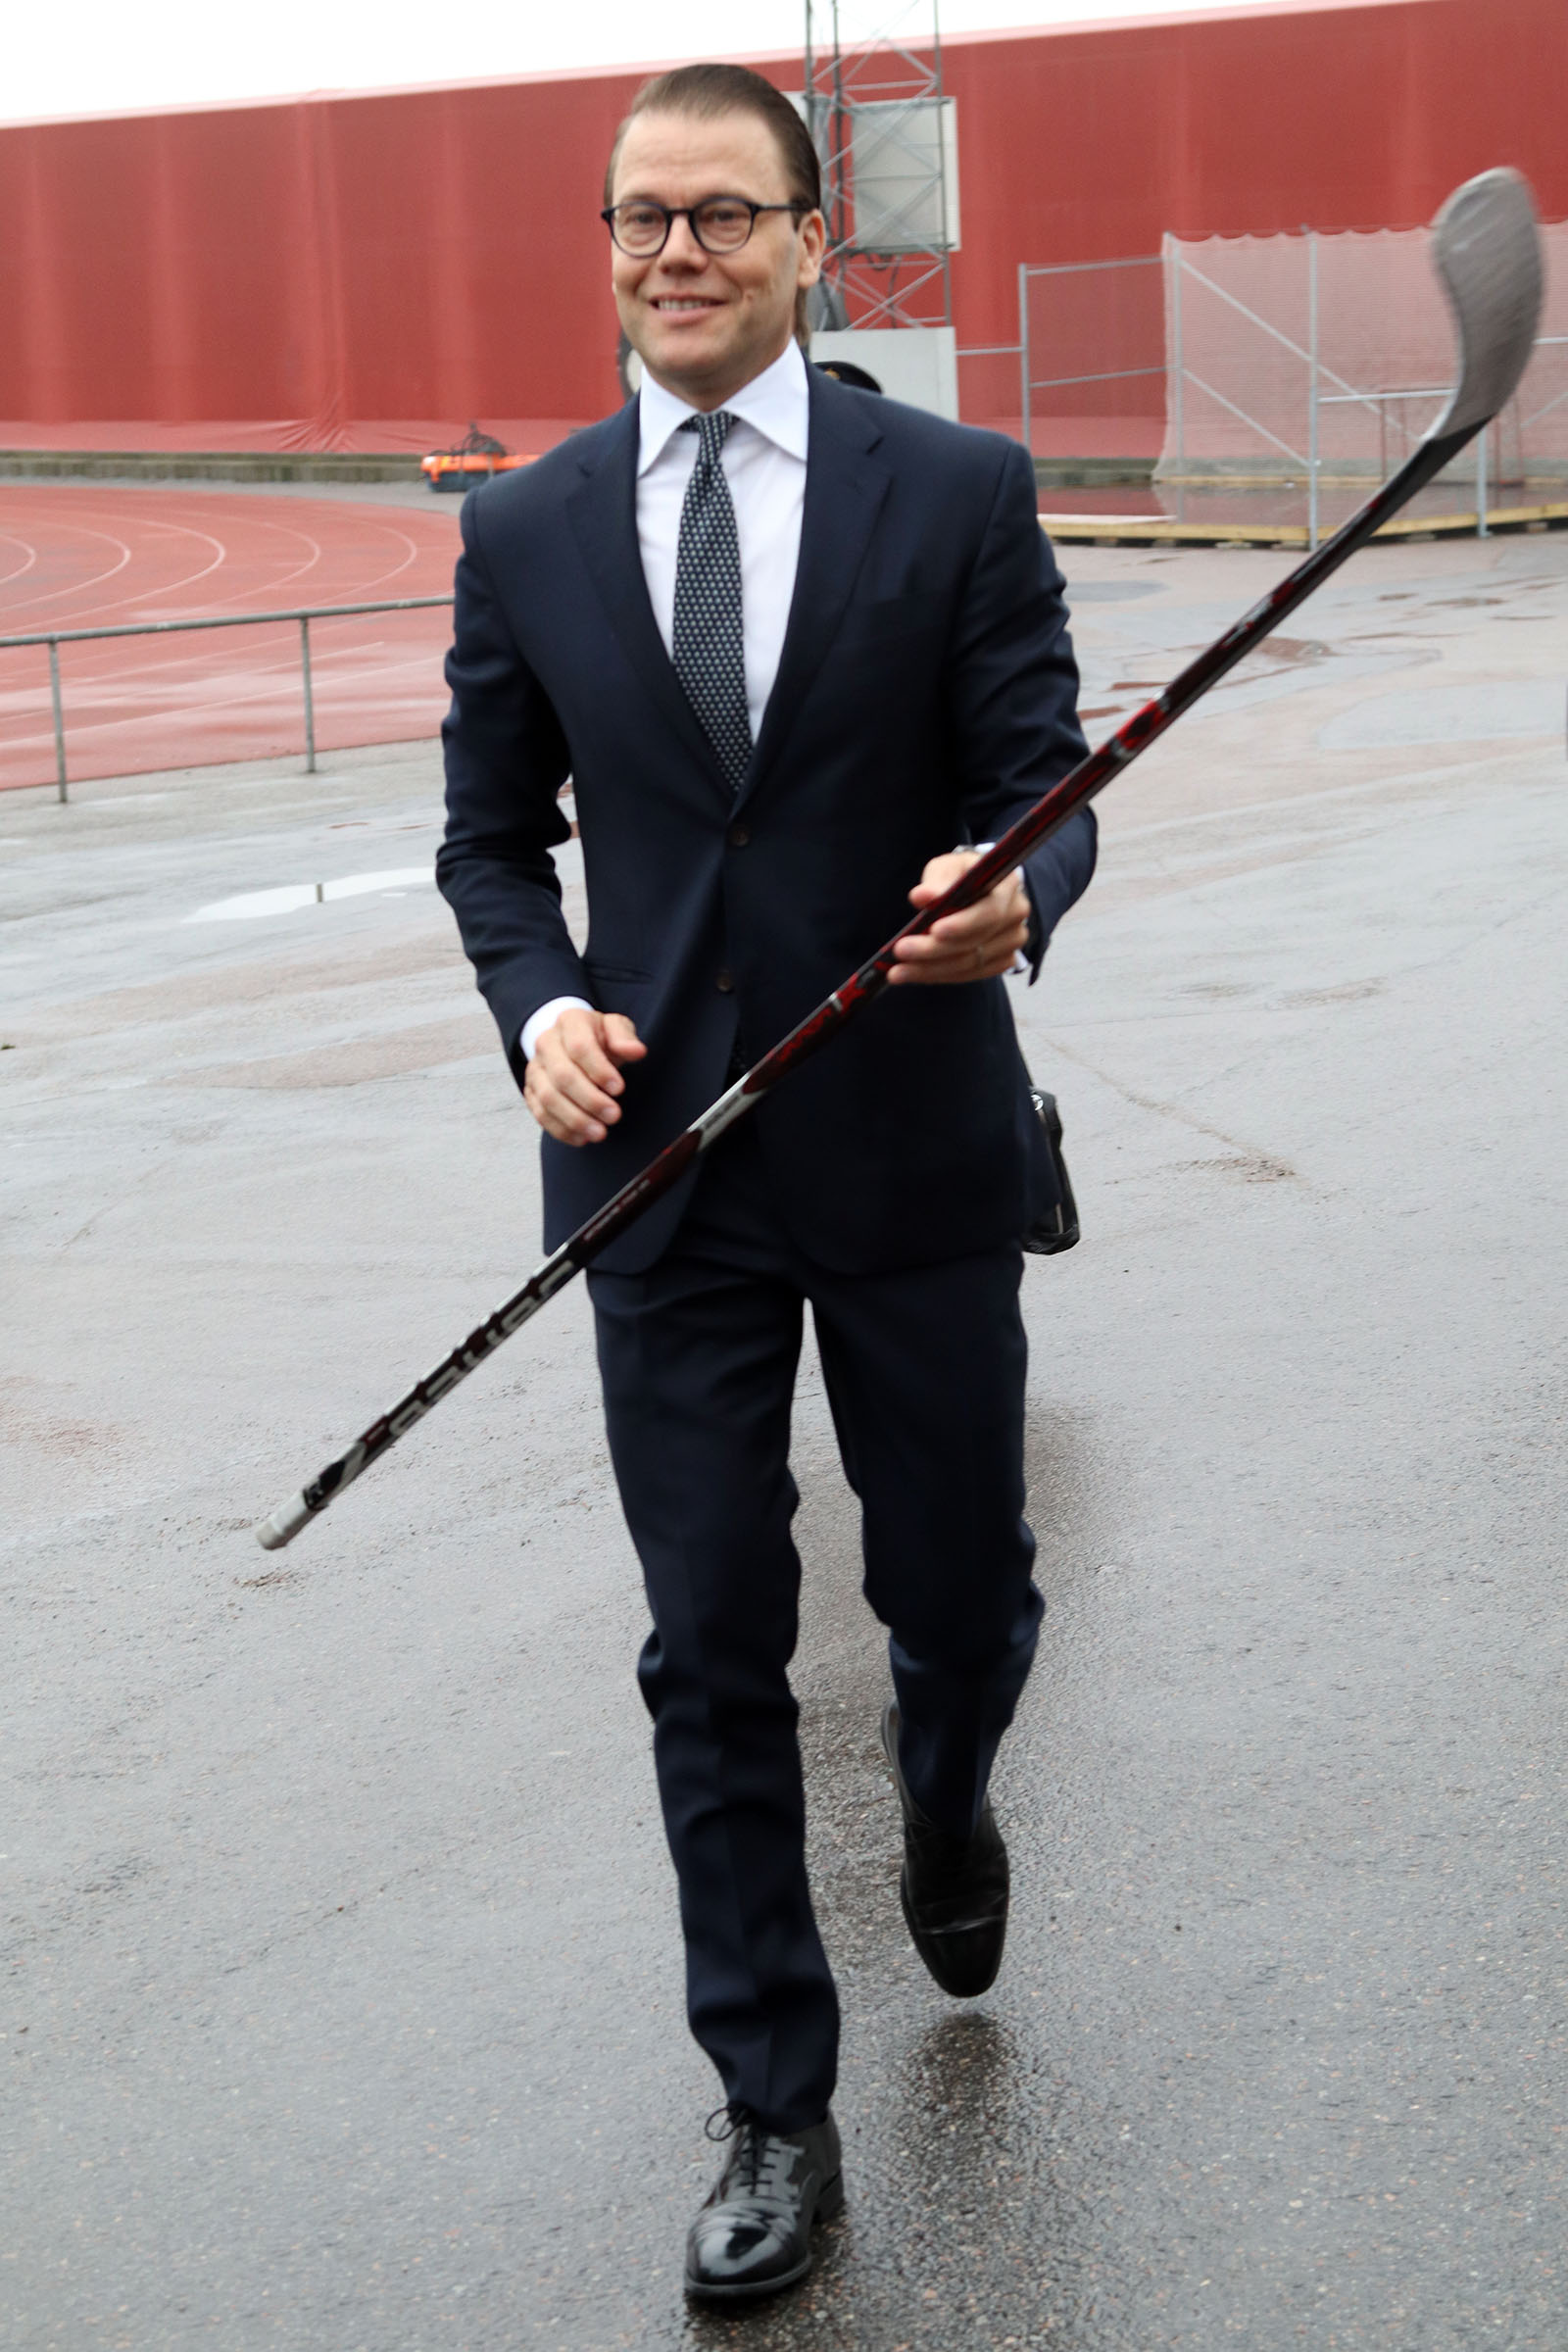 Prins Daniel har ett förflutet som hockeyspelare i Ockelbo och Hofors och skänkte en av sina klubbor till Fritidsbanken. Foto: Johannes Hedlund, Fritidsbanken